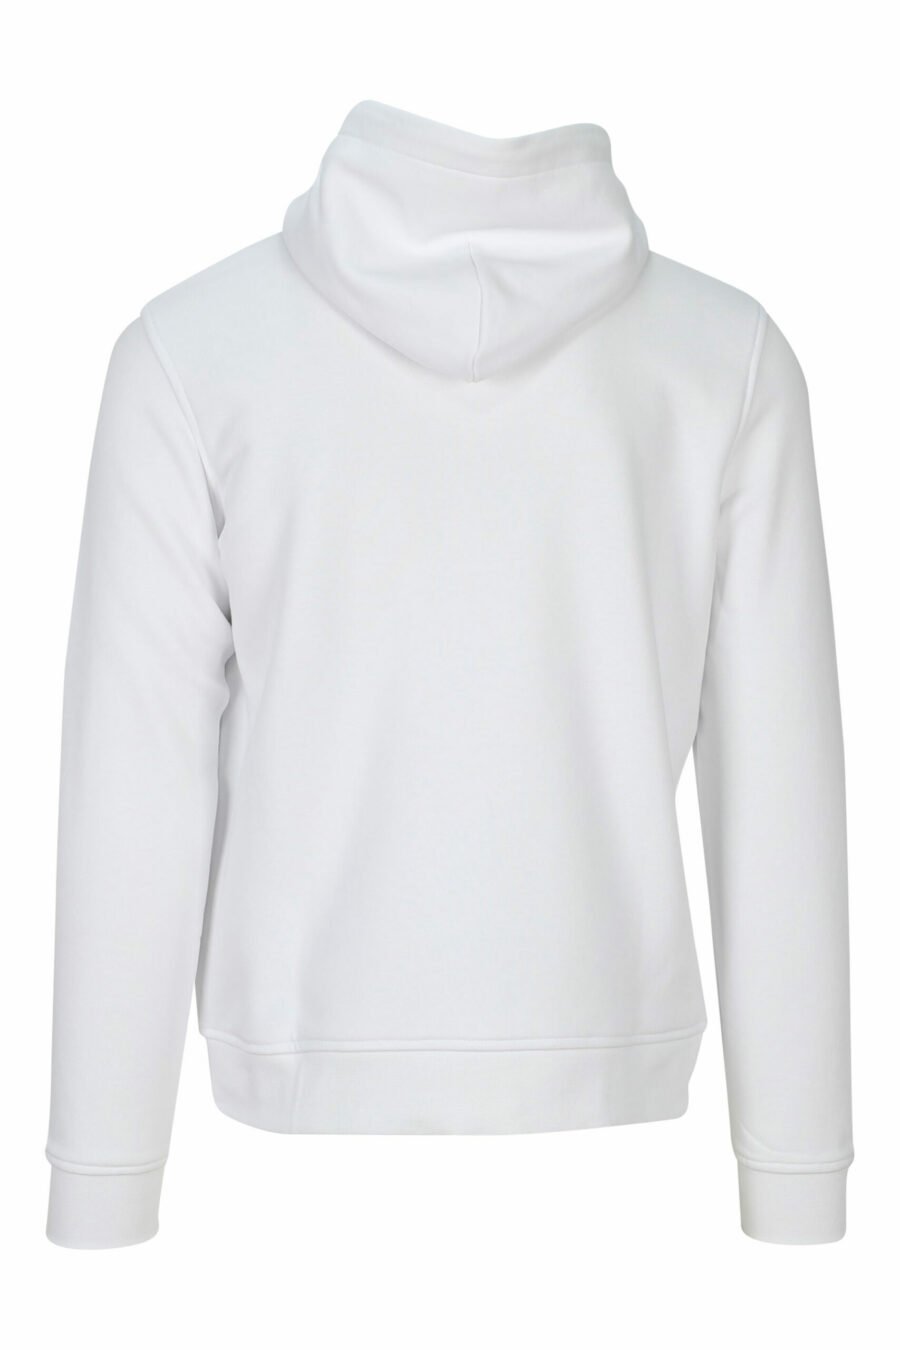 Sweat à capuche blanc avec mini-logo en caoutchouc monochrome - 4062226393331 1 à l'échelle